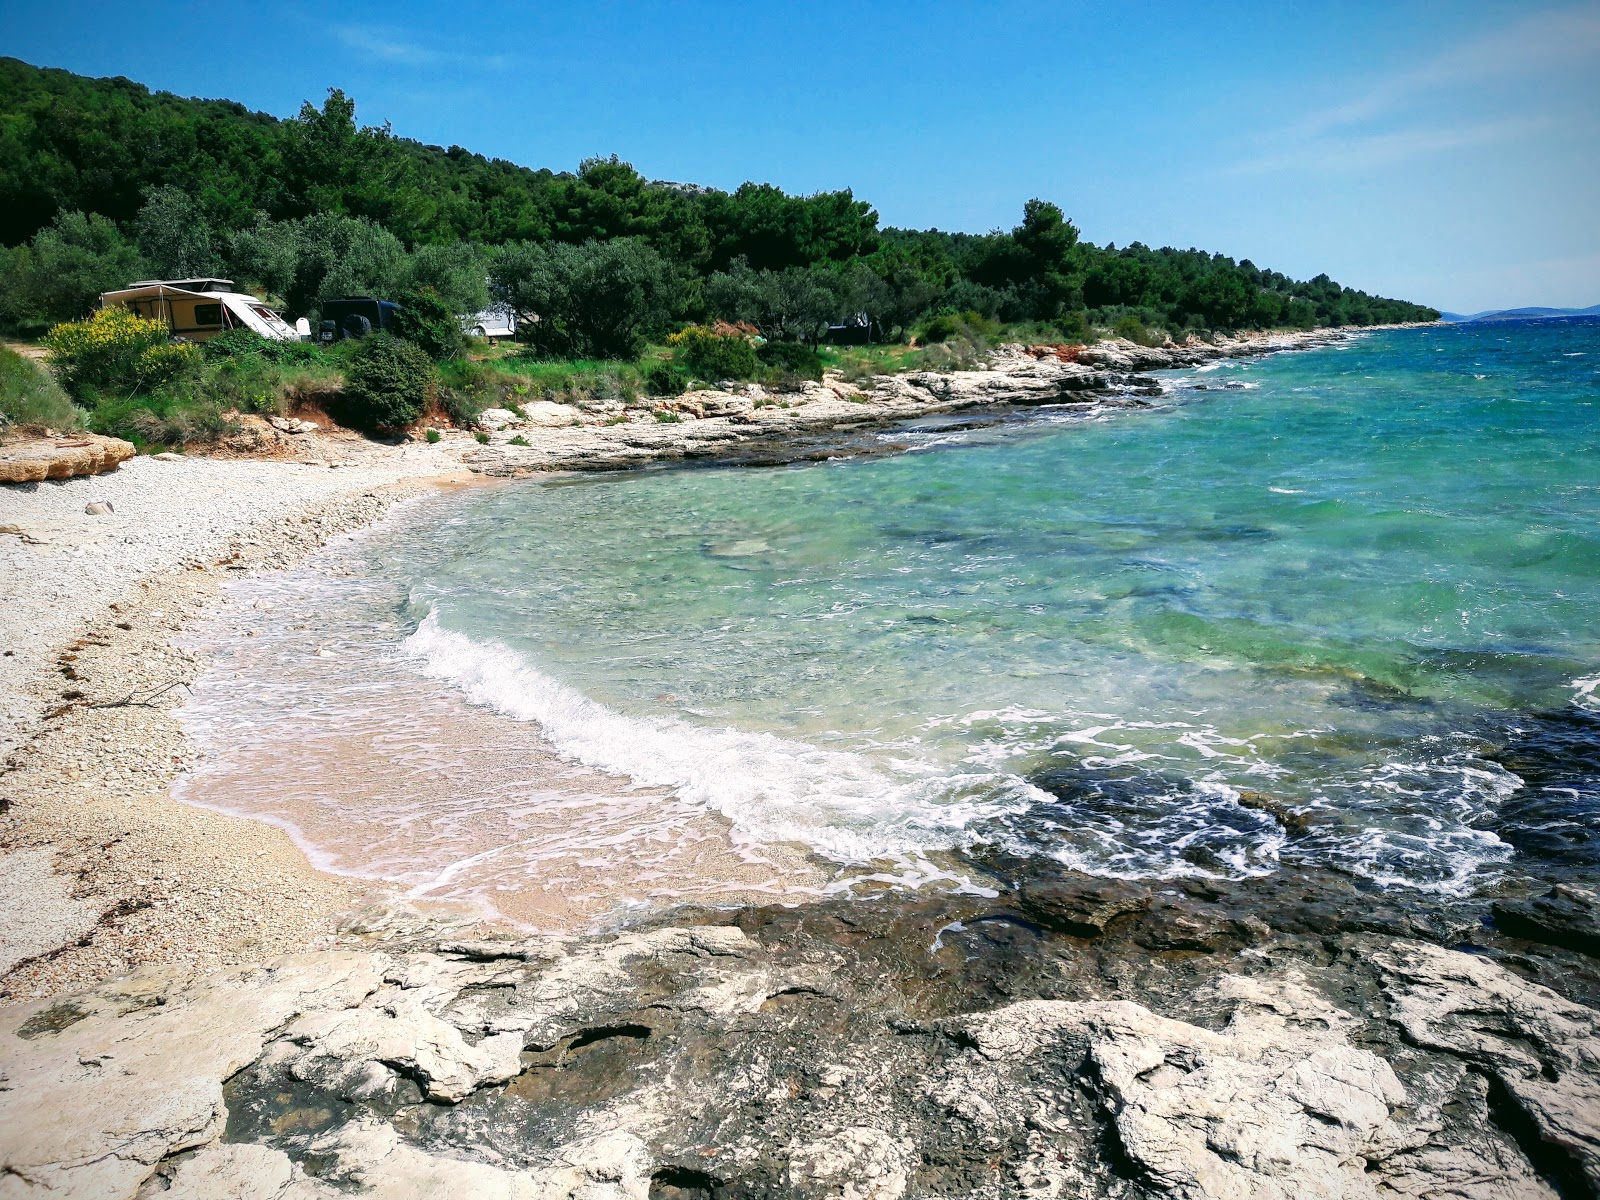 Foto af Kosirina beach - populært sted blandt afslapningskendere